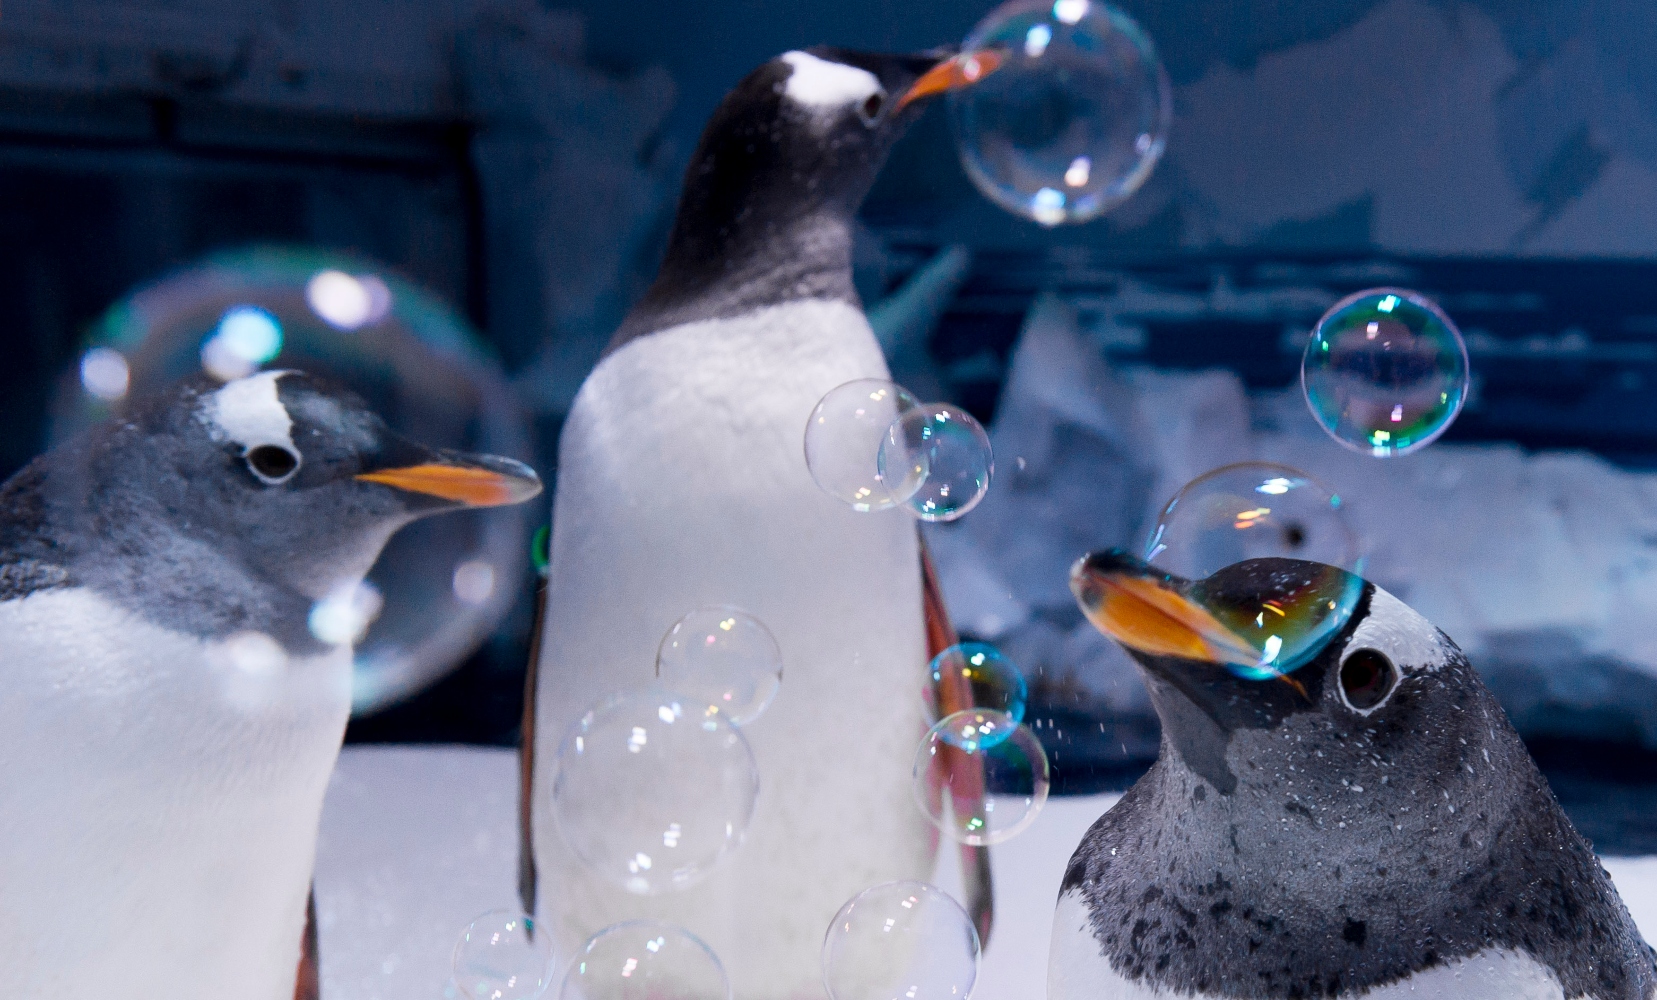 Επανάσταση πιγκουίνων σε ενυδρείο: Αρνούνται να φάνε την φθηνή τροφή που τους δίνουν λόγω πληθωρισμού